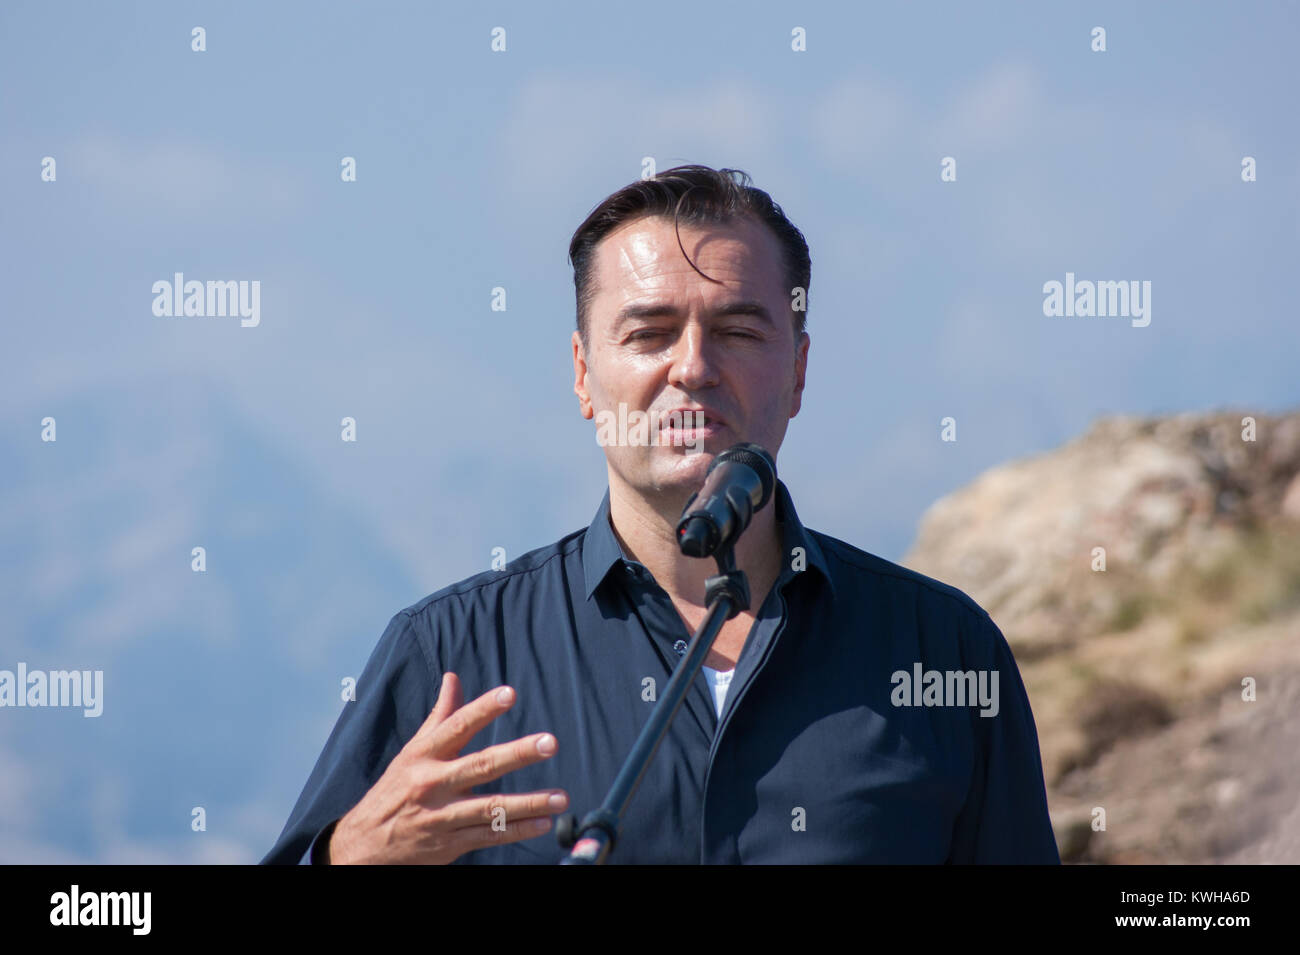 Porträt des Architekten Patrik Schumacher Principal bei Zaha Hadid Architects in seiner Rede bei der Eröffnung des Messner Mountain Museum Kronplatz, Italien, 2015 Stockfoto